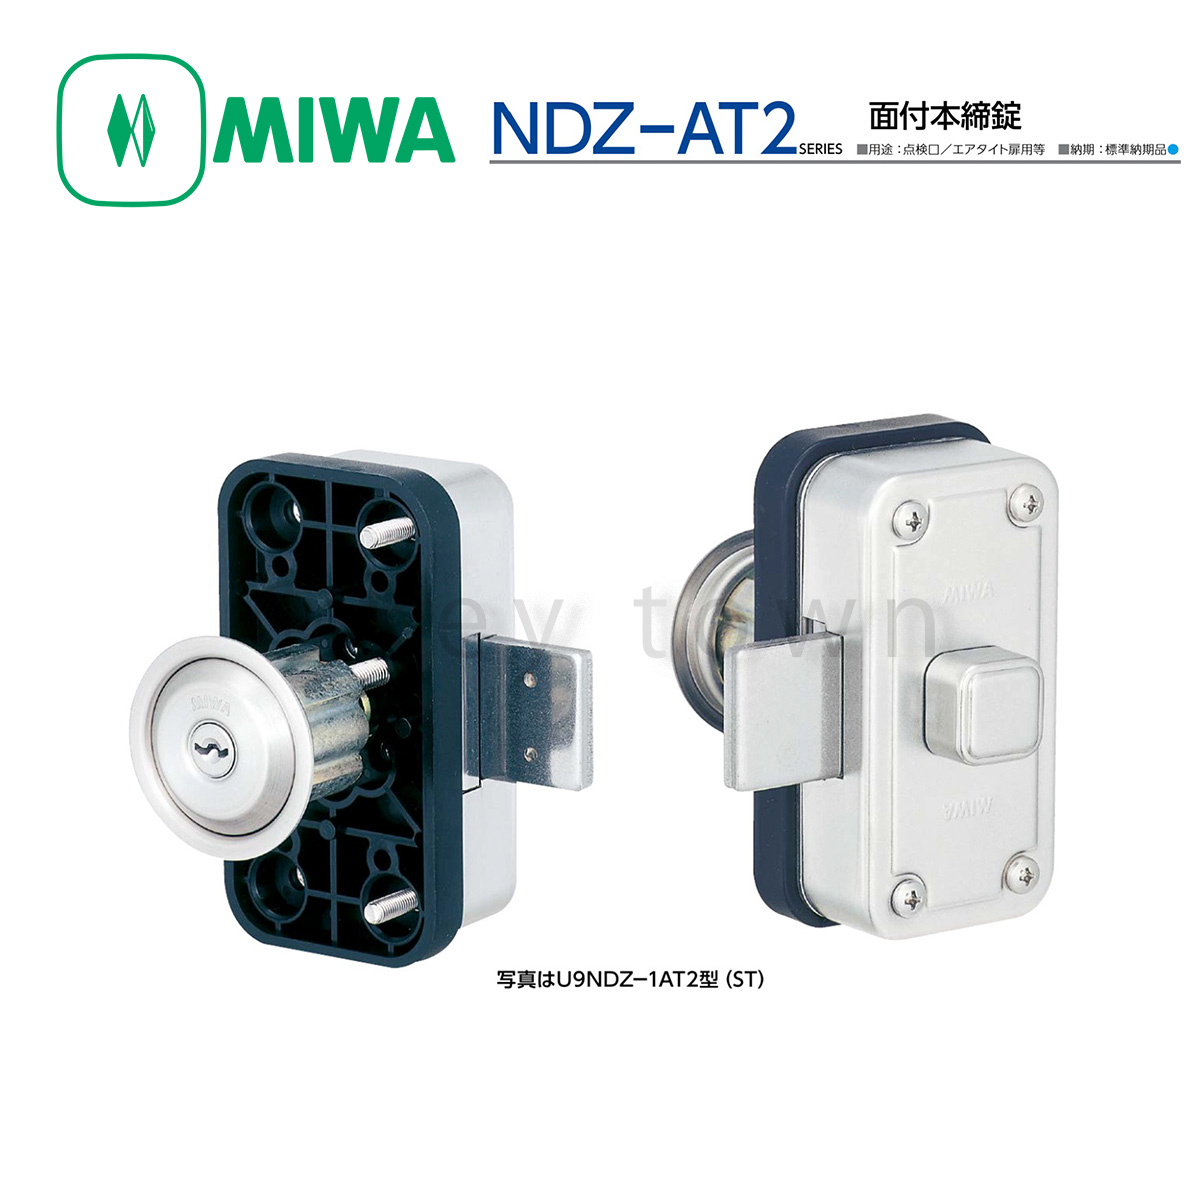 MIWA 【美和ロック】 面付本締錠 [MIWA-NDZ-AT2] U9NDZ-1AT2型｜鍵